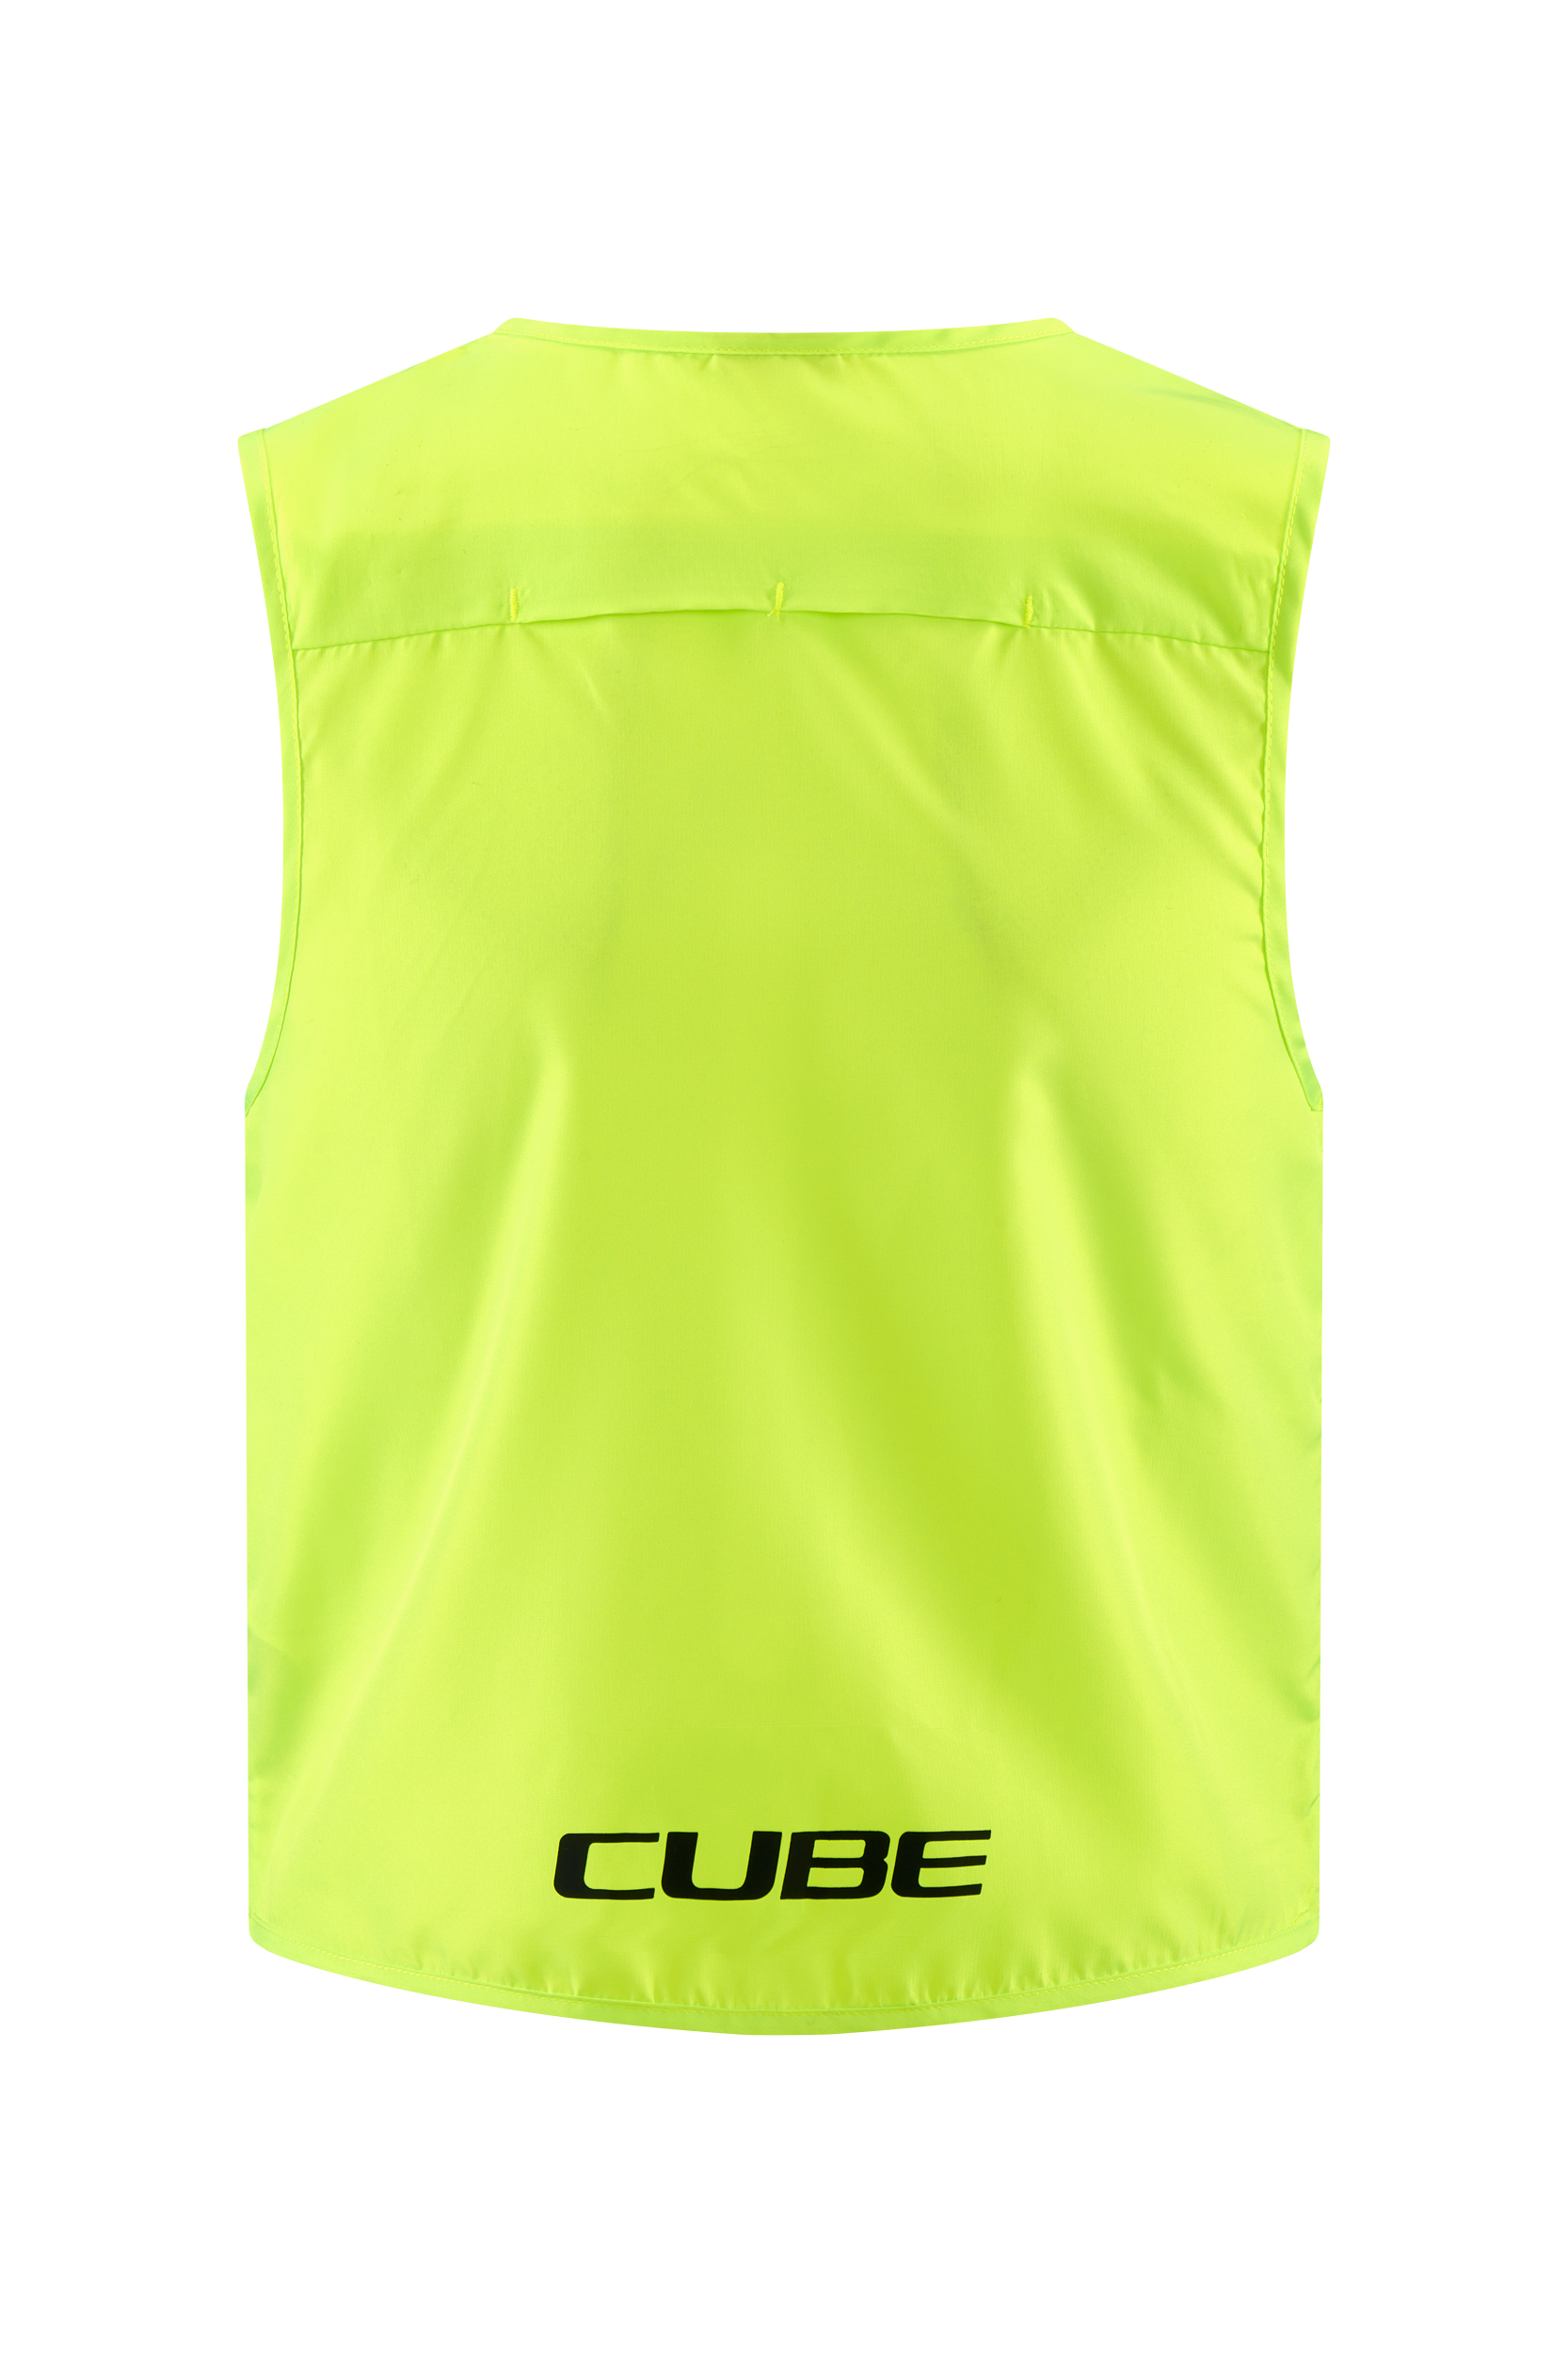 Cube Safety Rookie CMPT - Kinder Warnweste kaufen